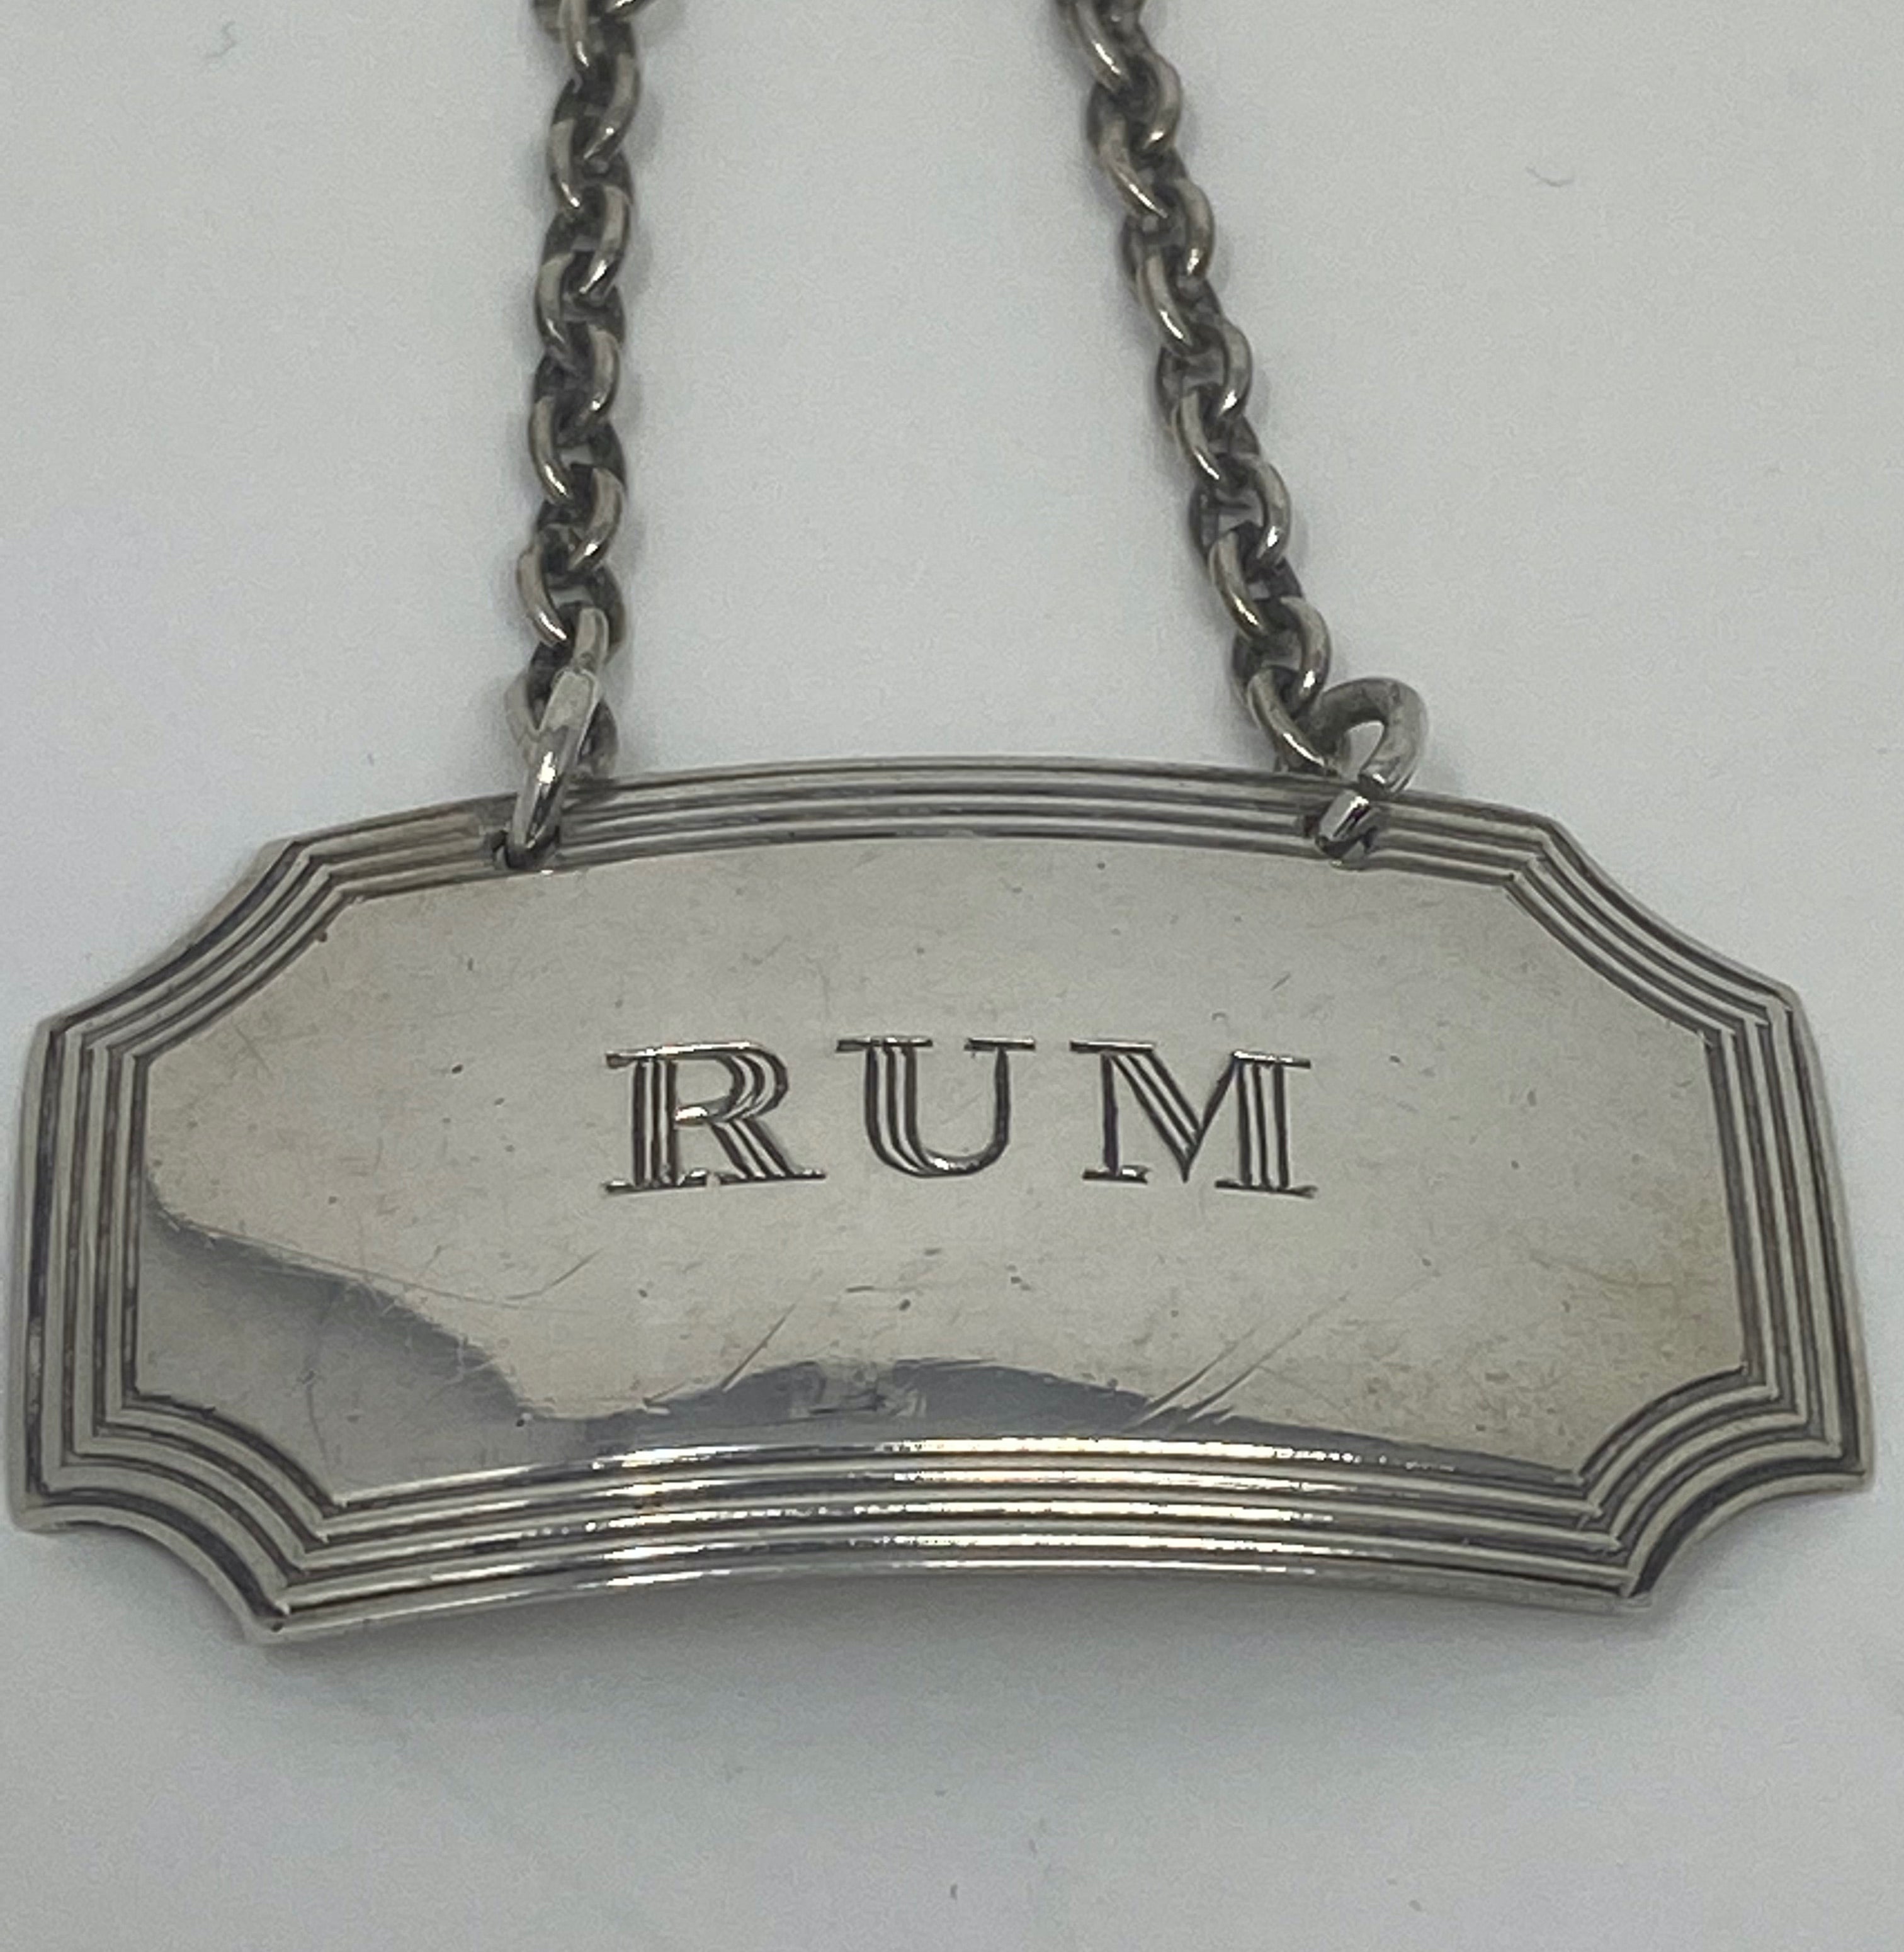 Silver Rum Bottle Label